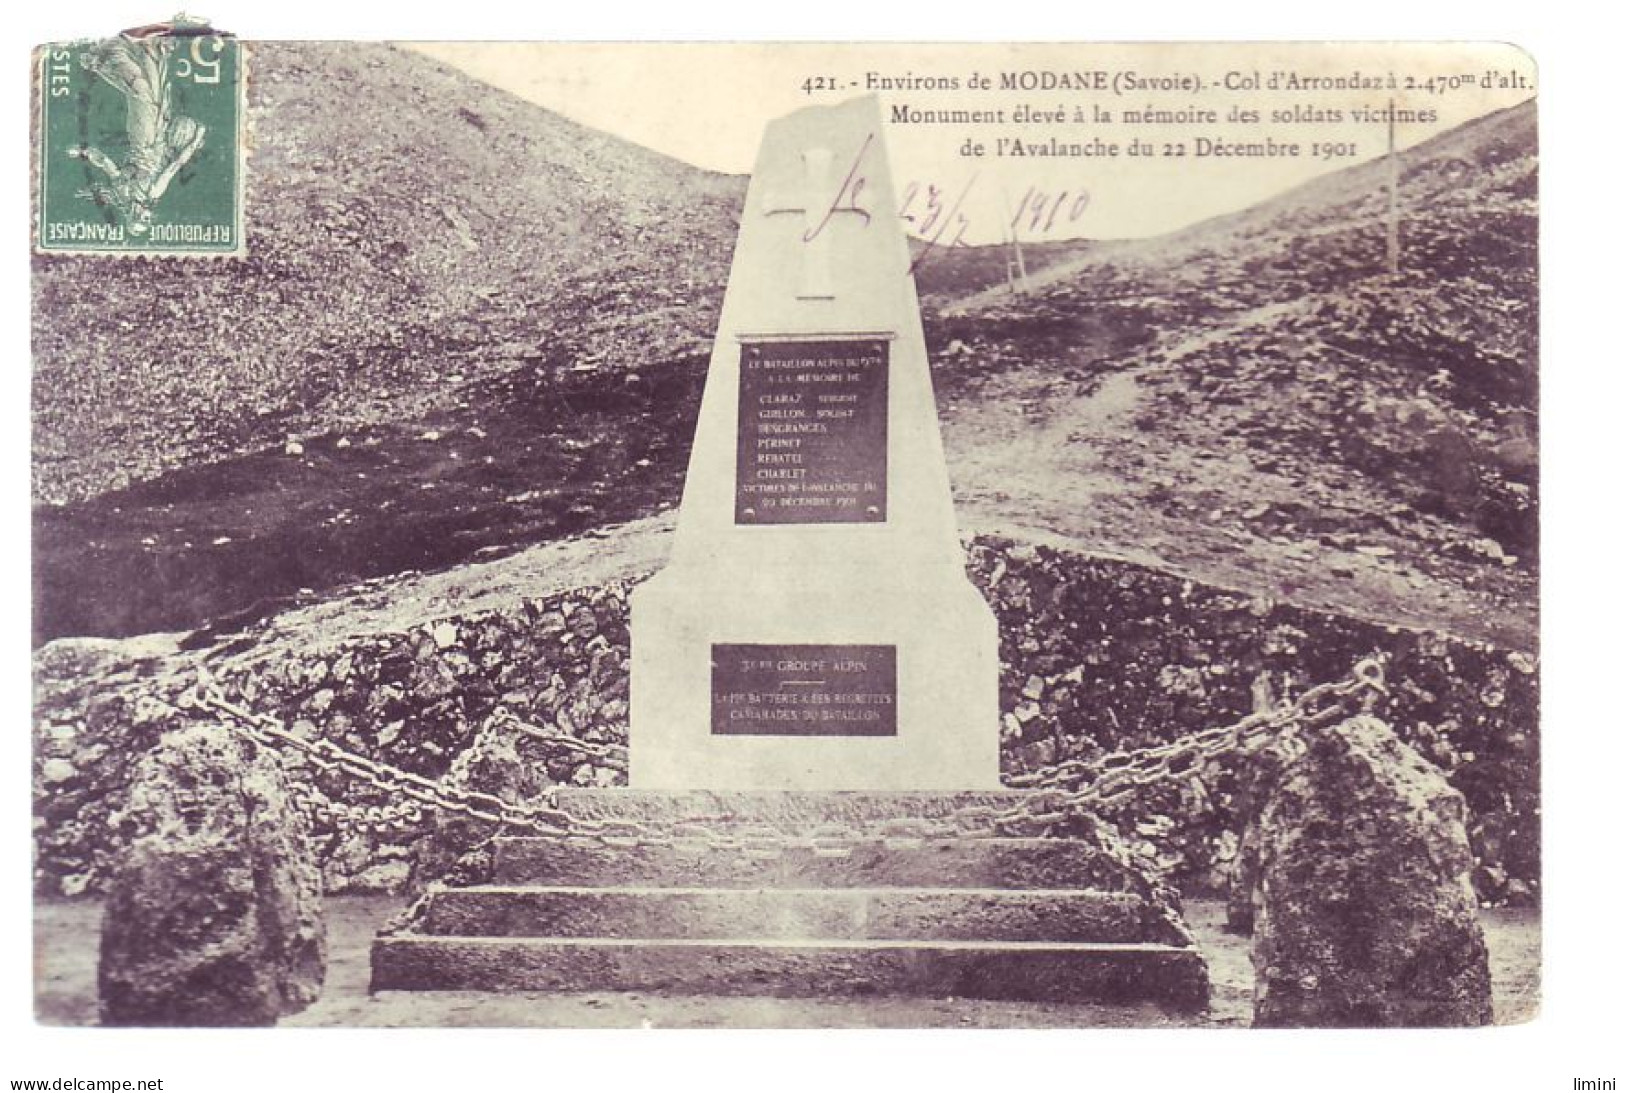 73 -  MODANE - COL D'ARONDAZ - MONUMENT AUX MORTS DES SOLDATS - ENVIRON DE MODANE -  - Modane